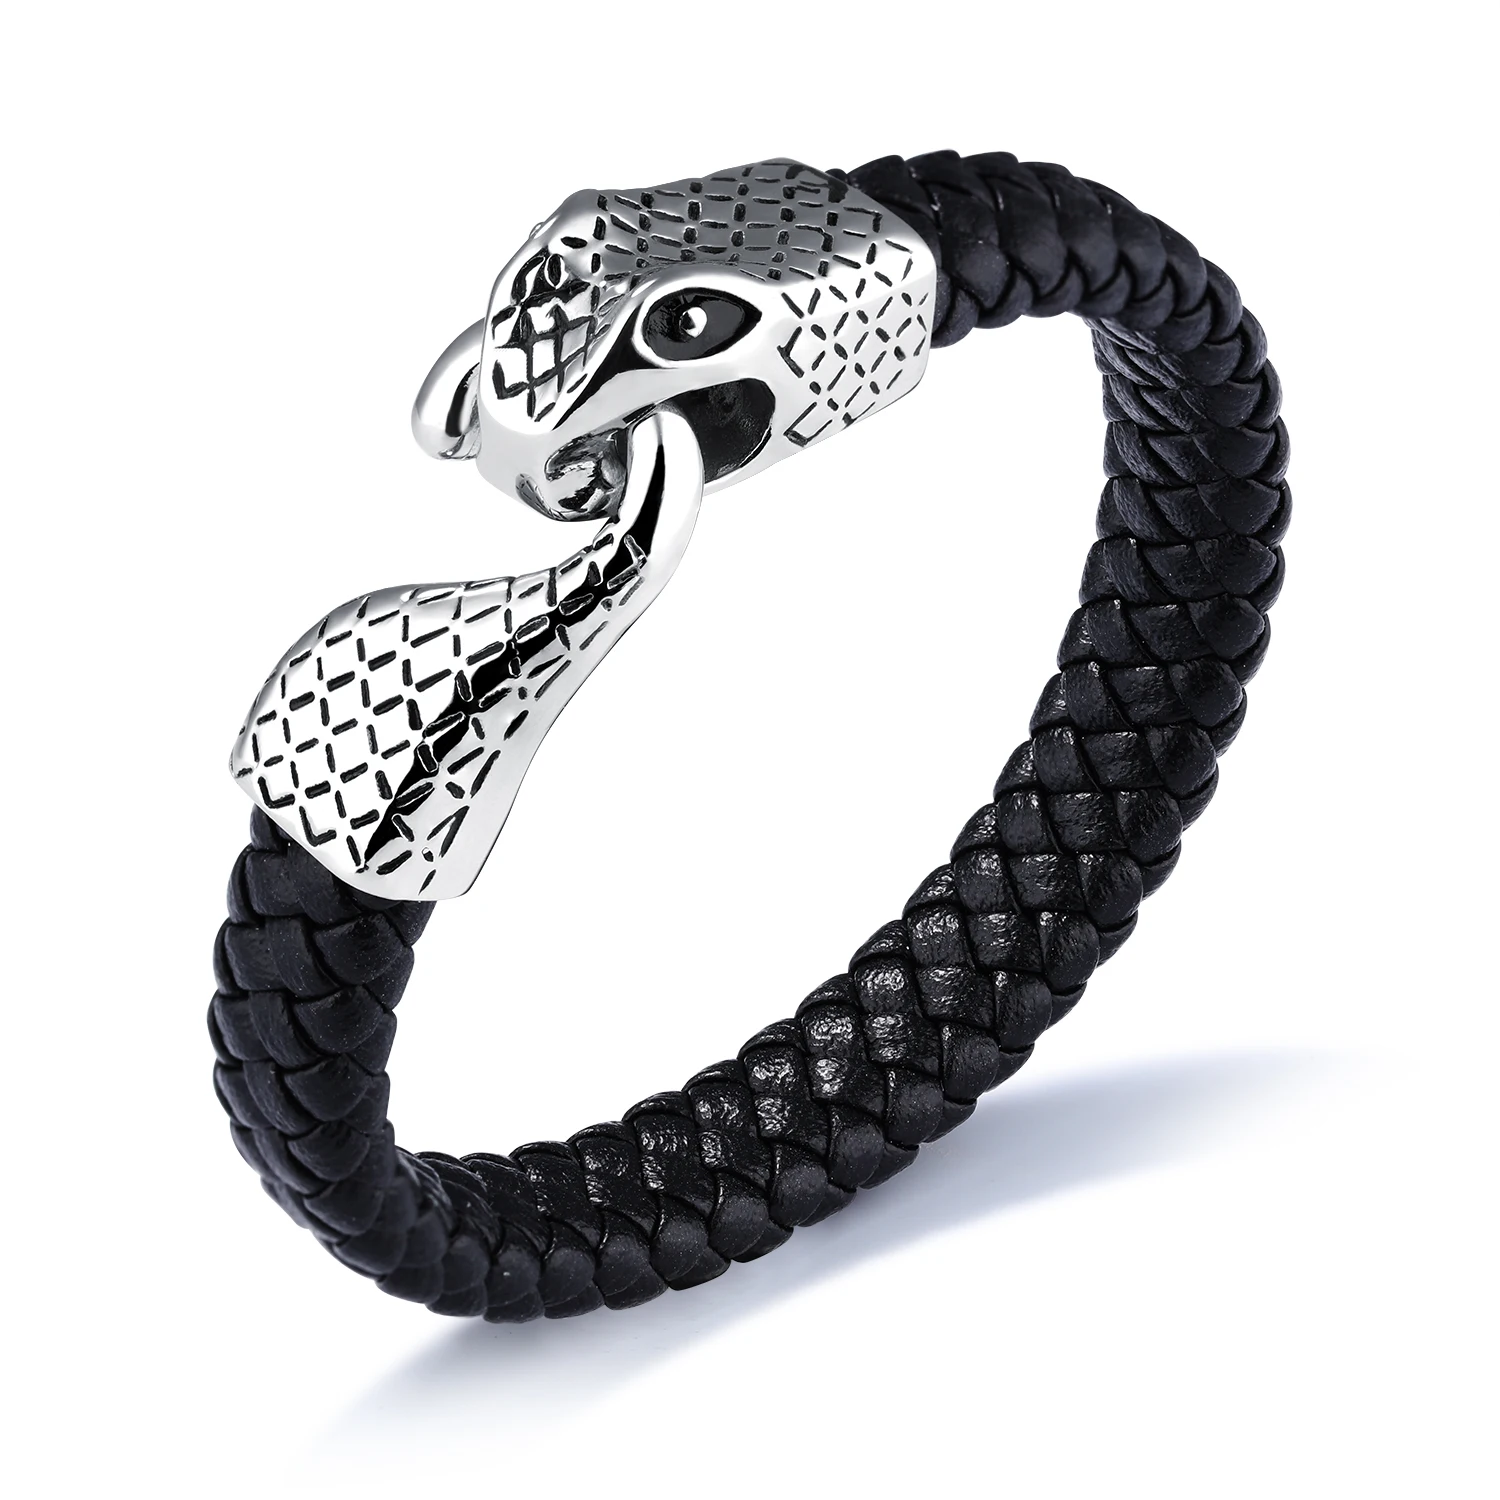 

Retro Weave Men Stainless Steel Bracelet Leather For Making Snake Bangle, Black,accept custom color